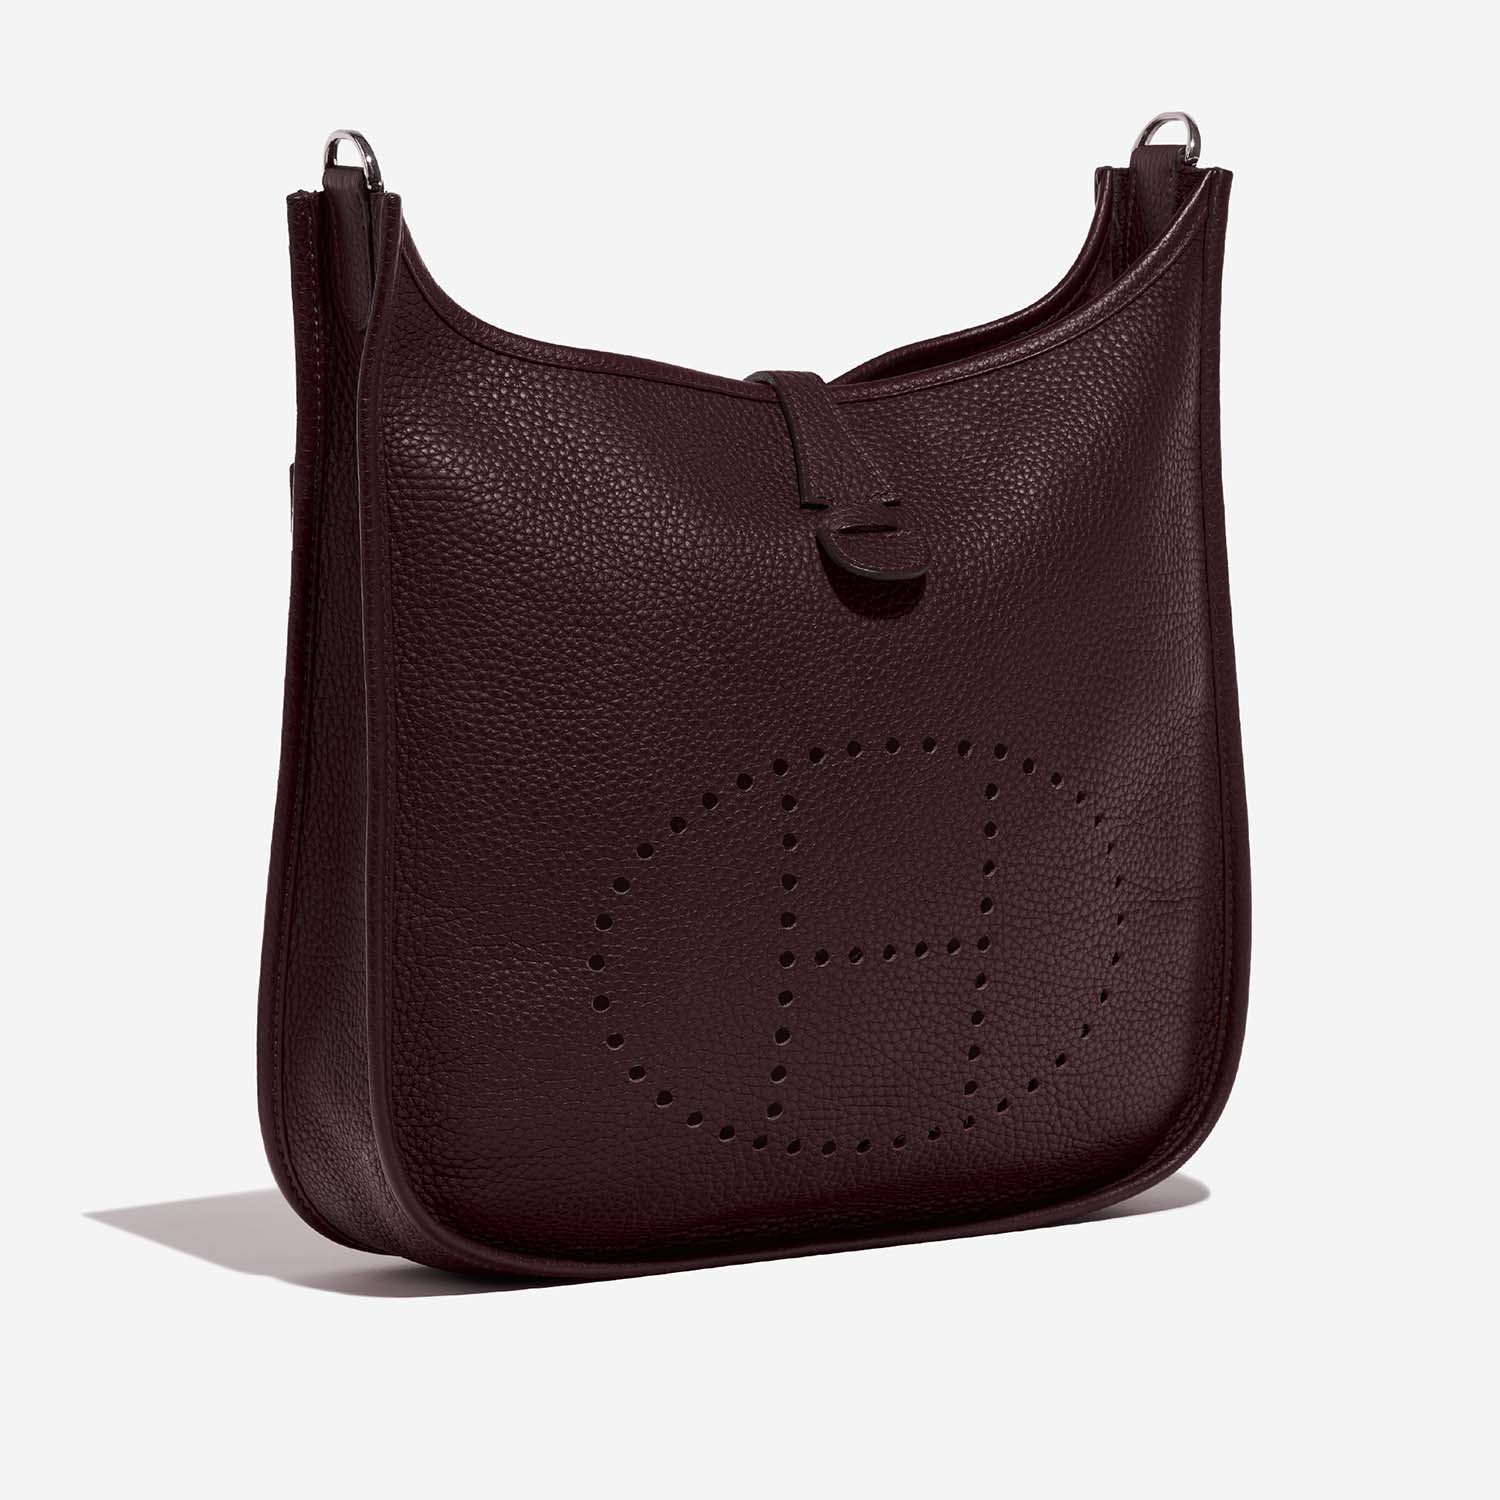 Pre-owned Hermès bag Evelyne 29 Taurillon Clemence Havane Brown Side Front | Sell your designer bag on Saclab.com